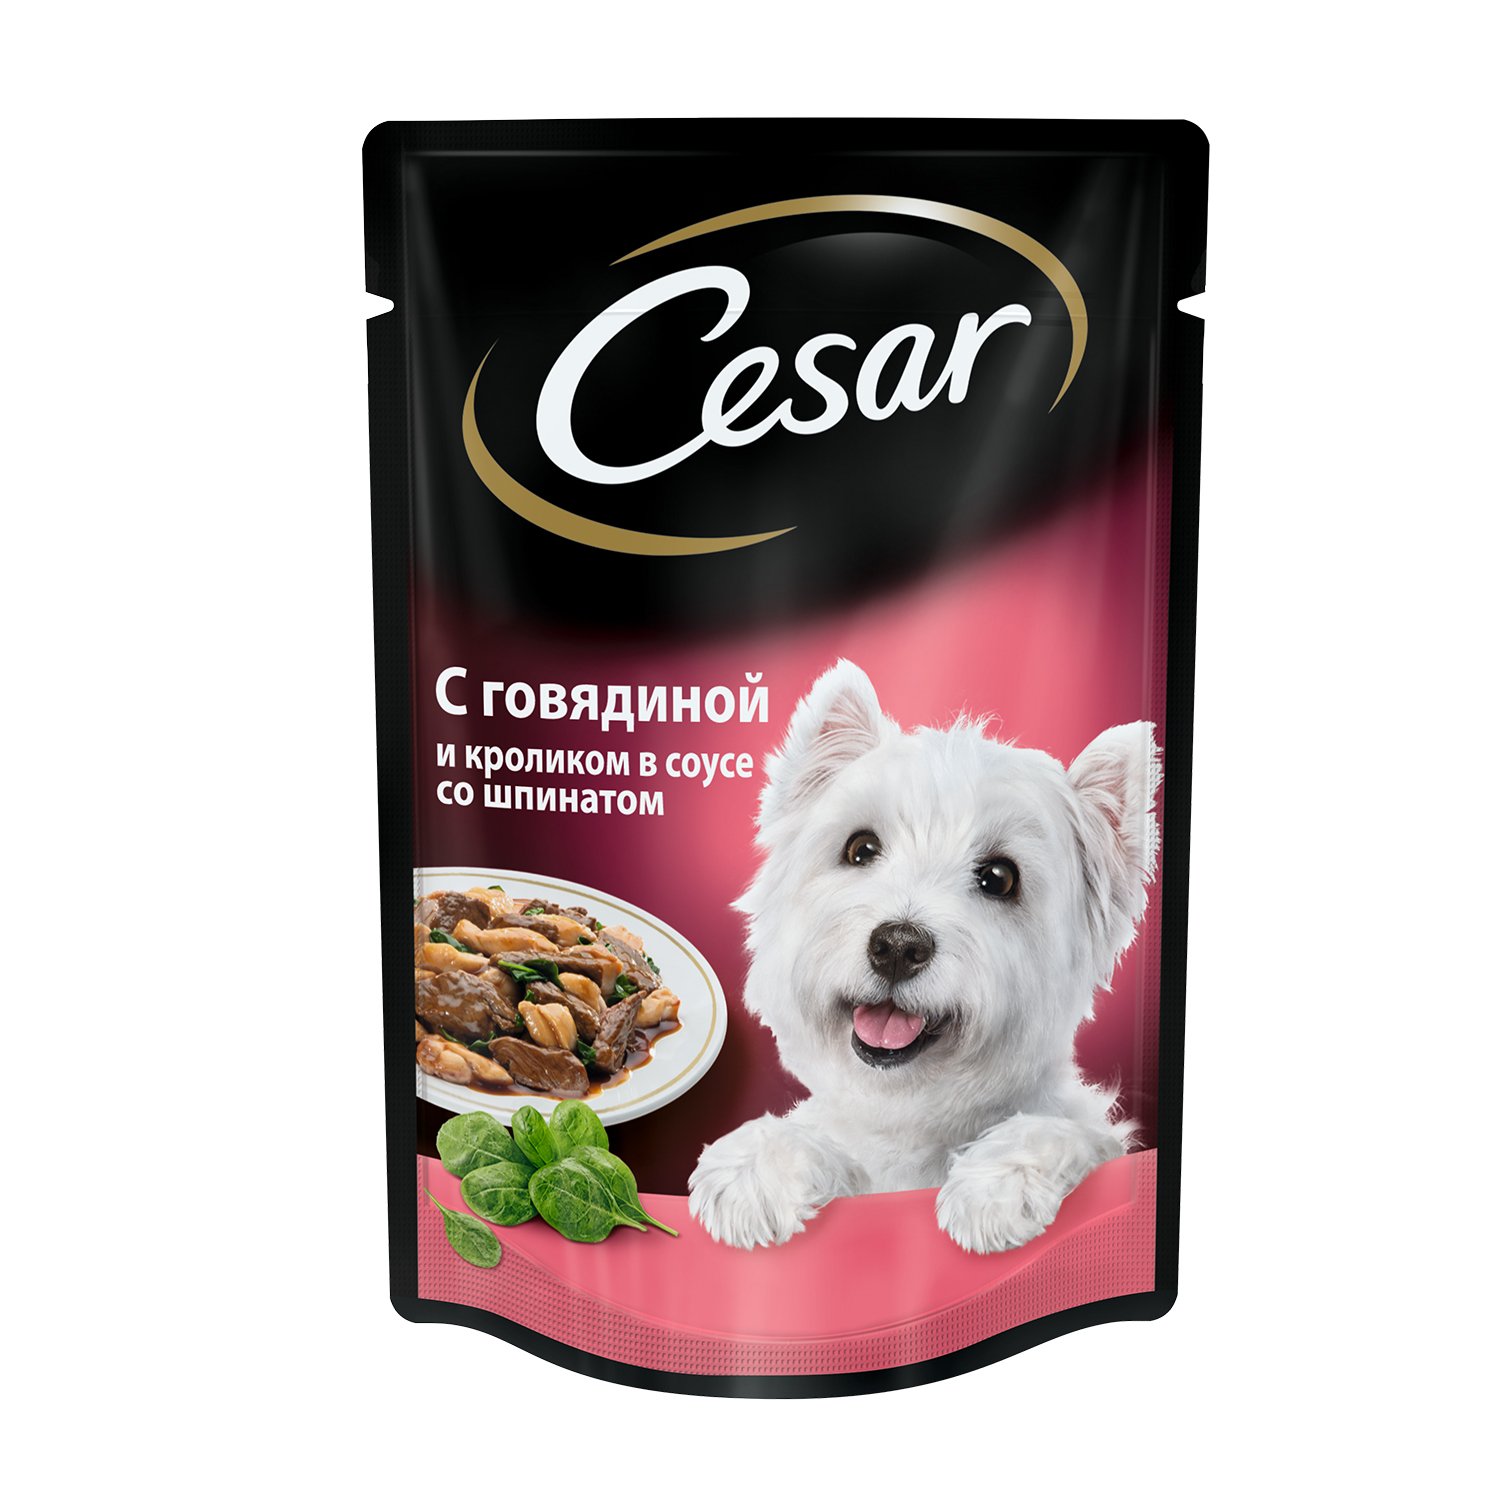 Корм для собак Cesar 100г с говядиной, кроликом и шпинатом пауч - фото 1